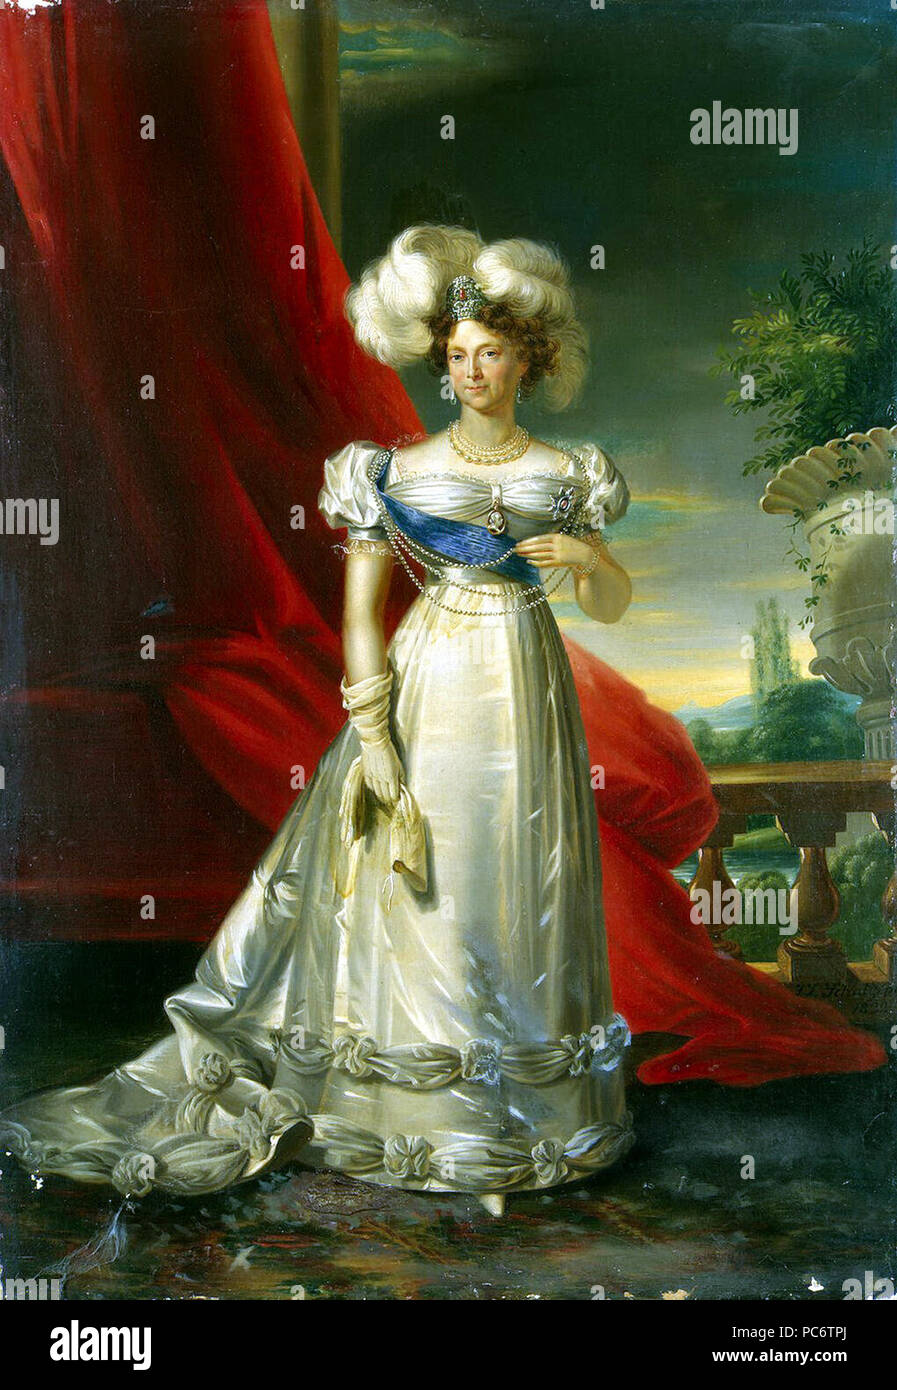 Цифровая репродукция этой картины находится в коллекции интернет-галереи Gallerix.ru ( http://gallerix.ru ) 547 Schultz Ludwig - Portrait of Empress Maria Fiodorovna Stock Photo